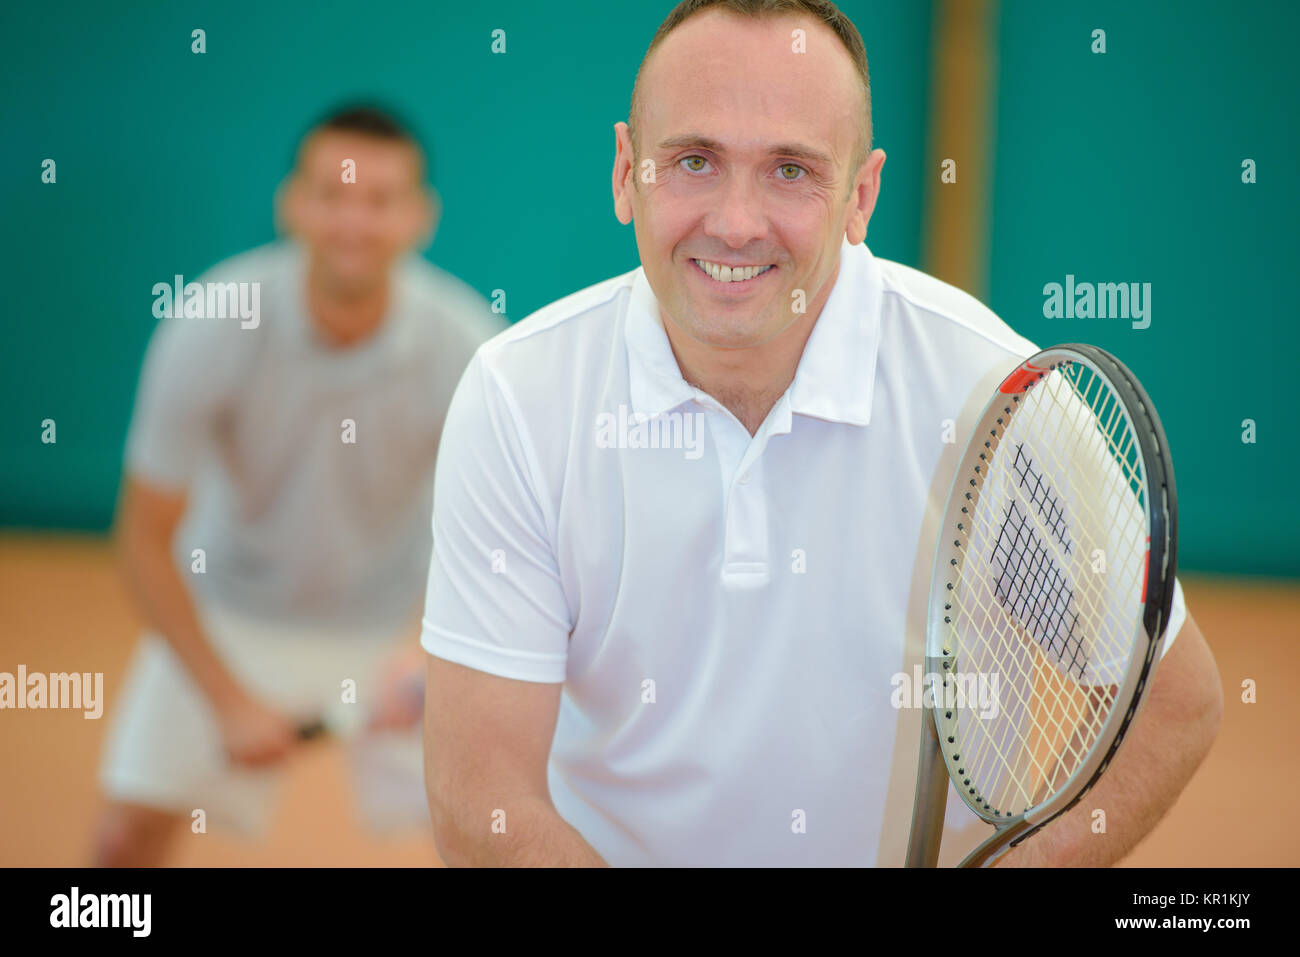 Two smiling men playing tennis Stock Photo